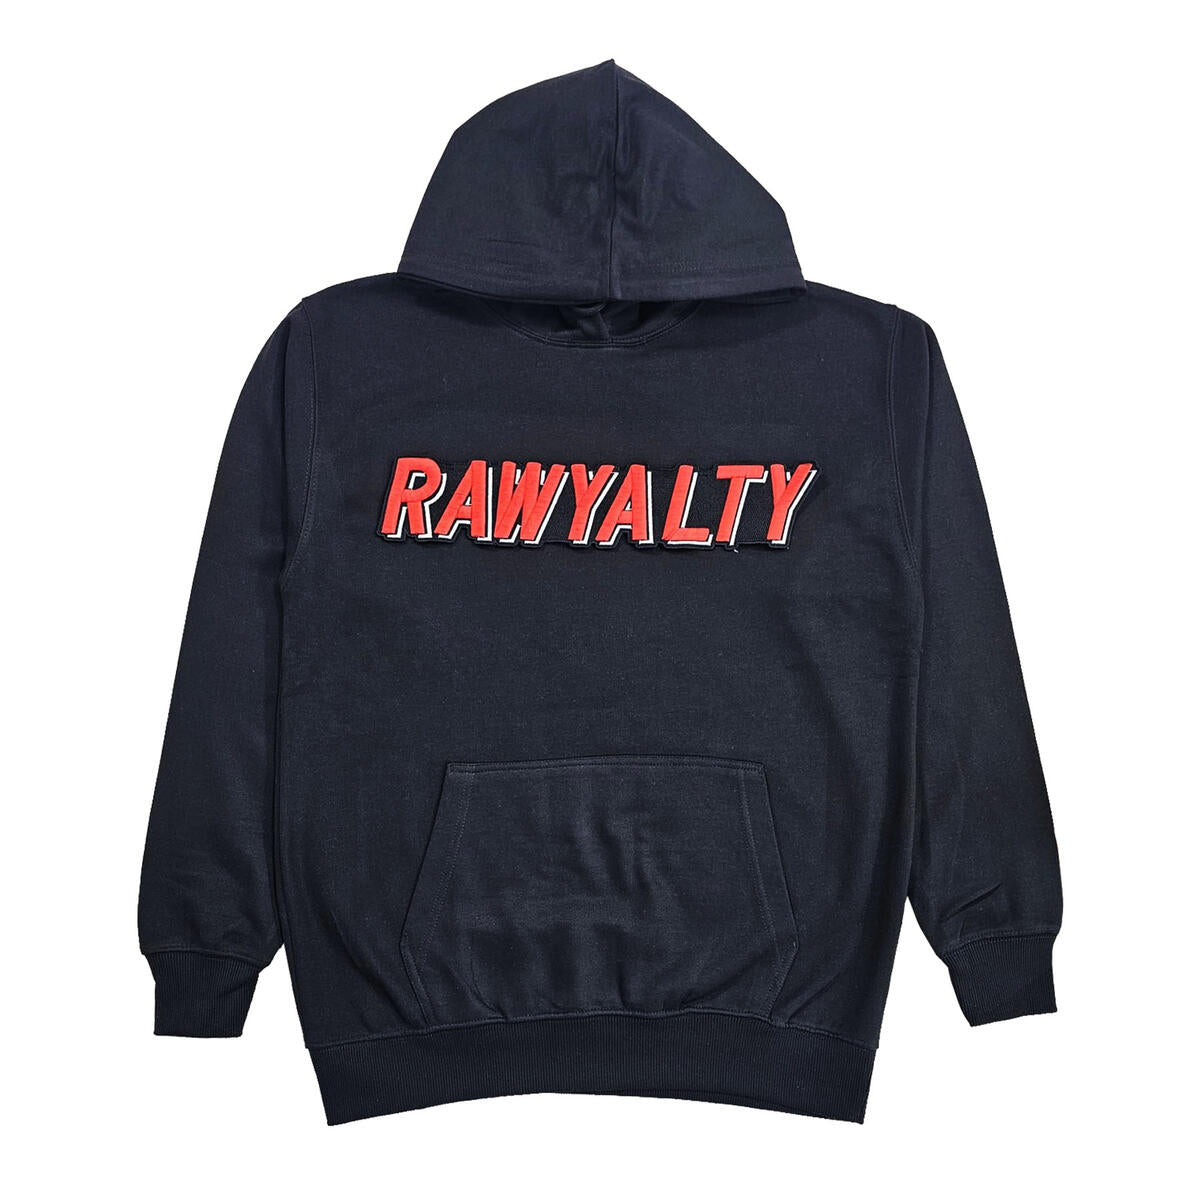 Rawyalty Print Hoodie - Black/Red